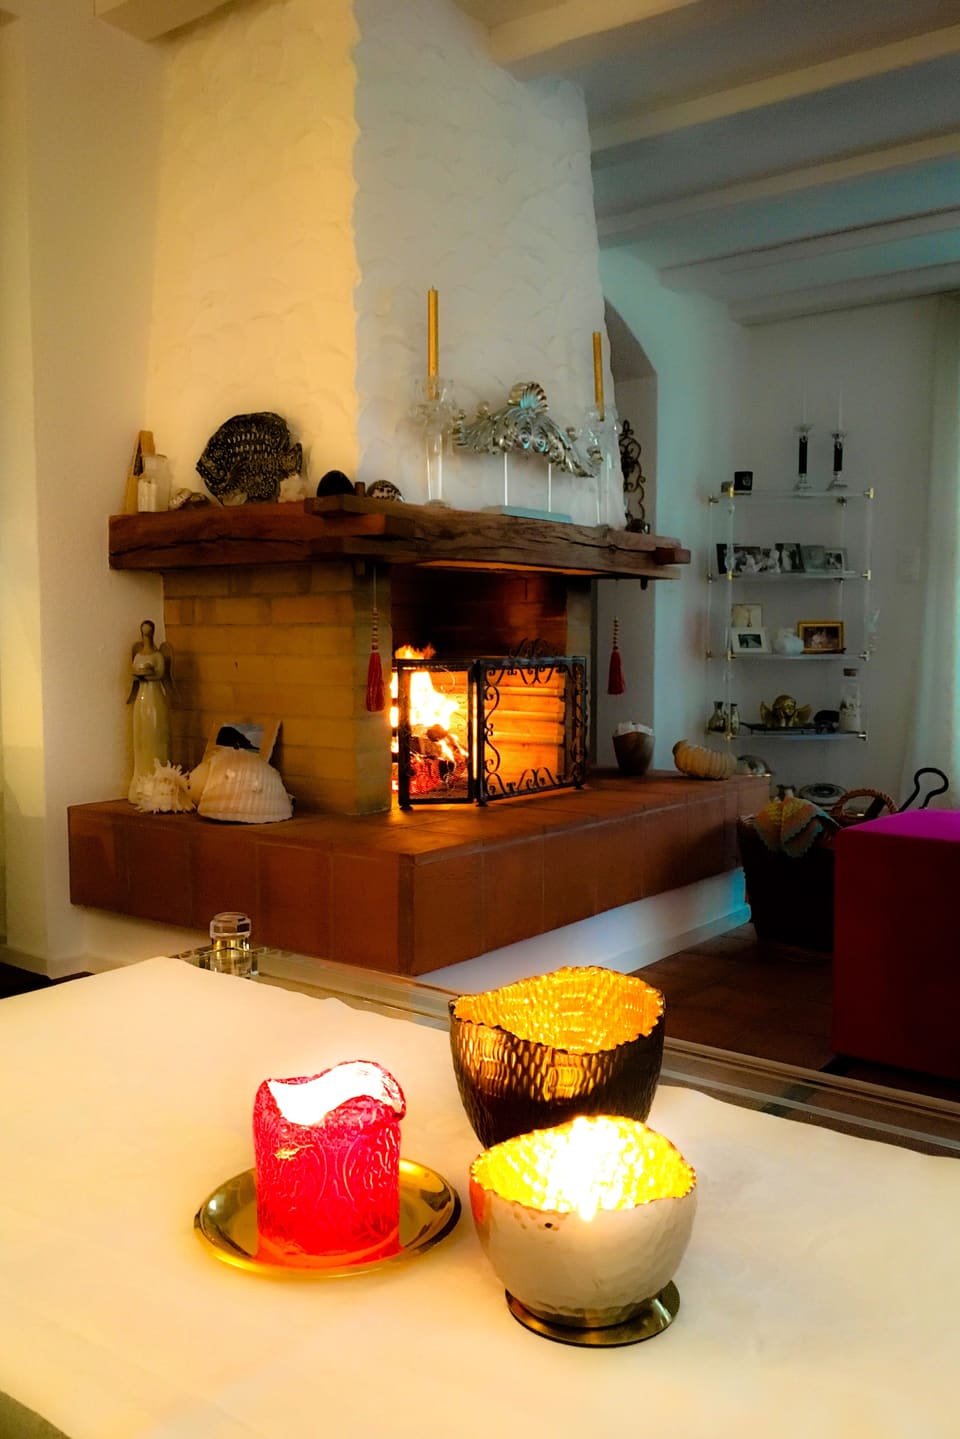 Tisch mit drei Kerzen, im Hintergrund ein brennendes Cheminée.